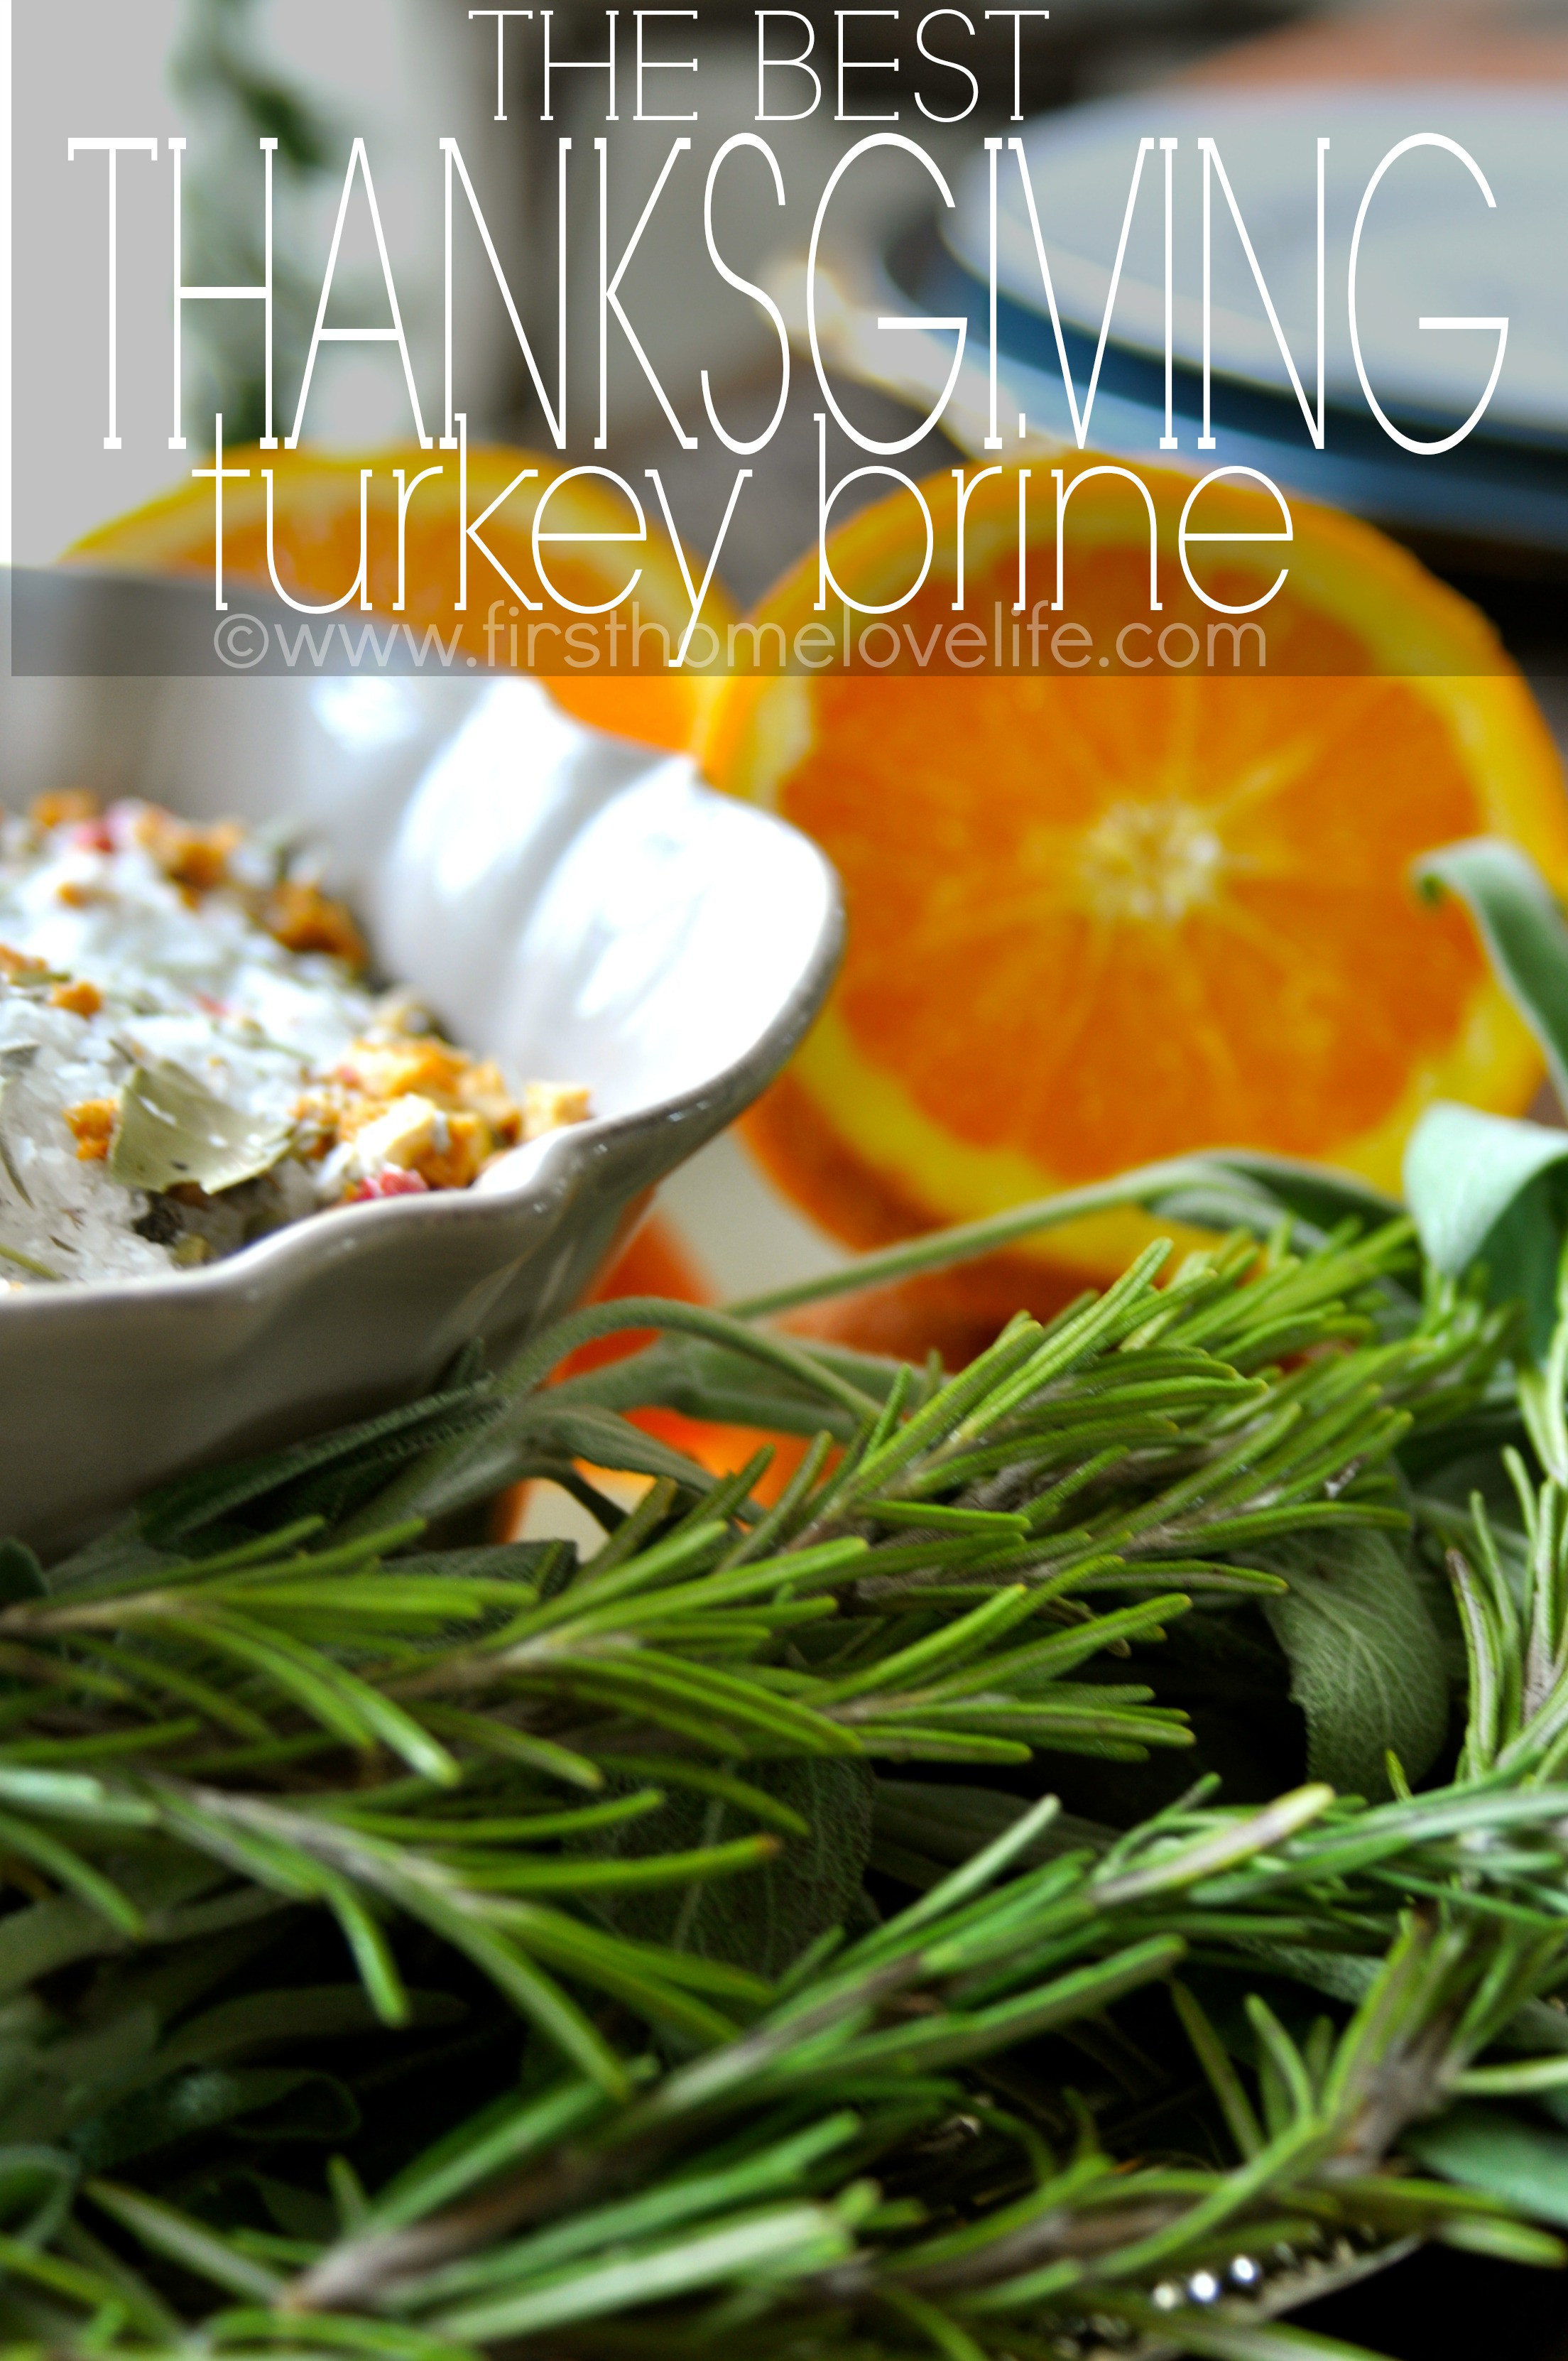 Best Thanksgiving Turkey Brine
 The Best Thanksgiving Turkey Brine First Home Love Life